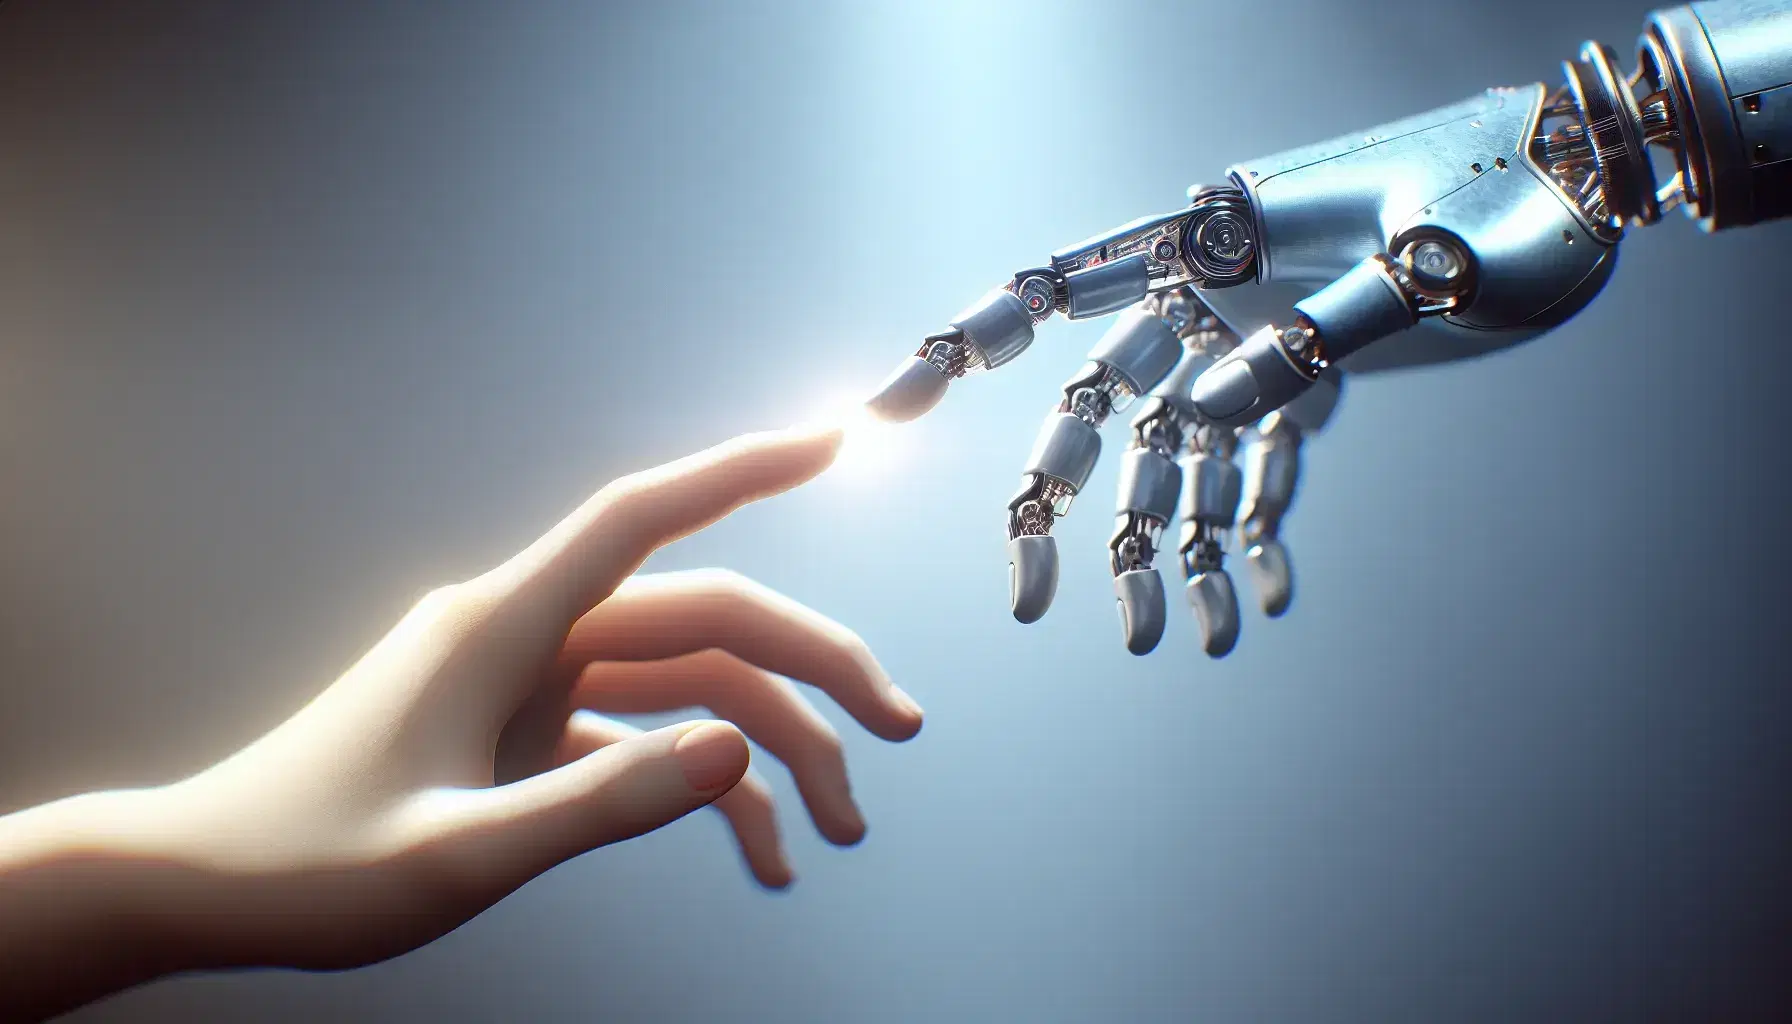 Mano humana de piel clara y mano robótica de metal se acercan para estrecharse en un fondo desenfocado azul grisáceo, simbolizando la unión de la humanidad y la tecnología.